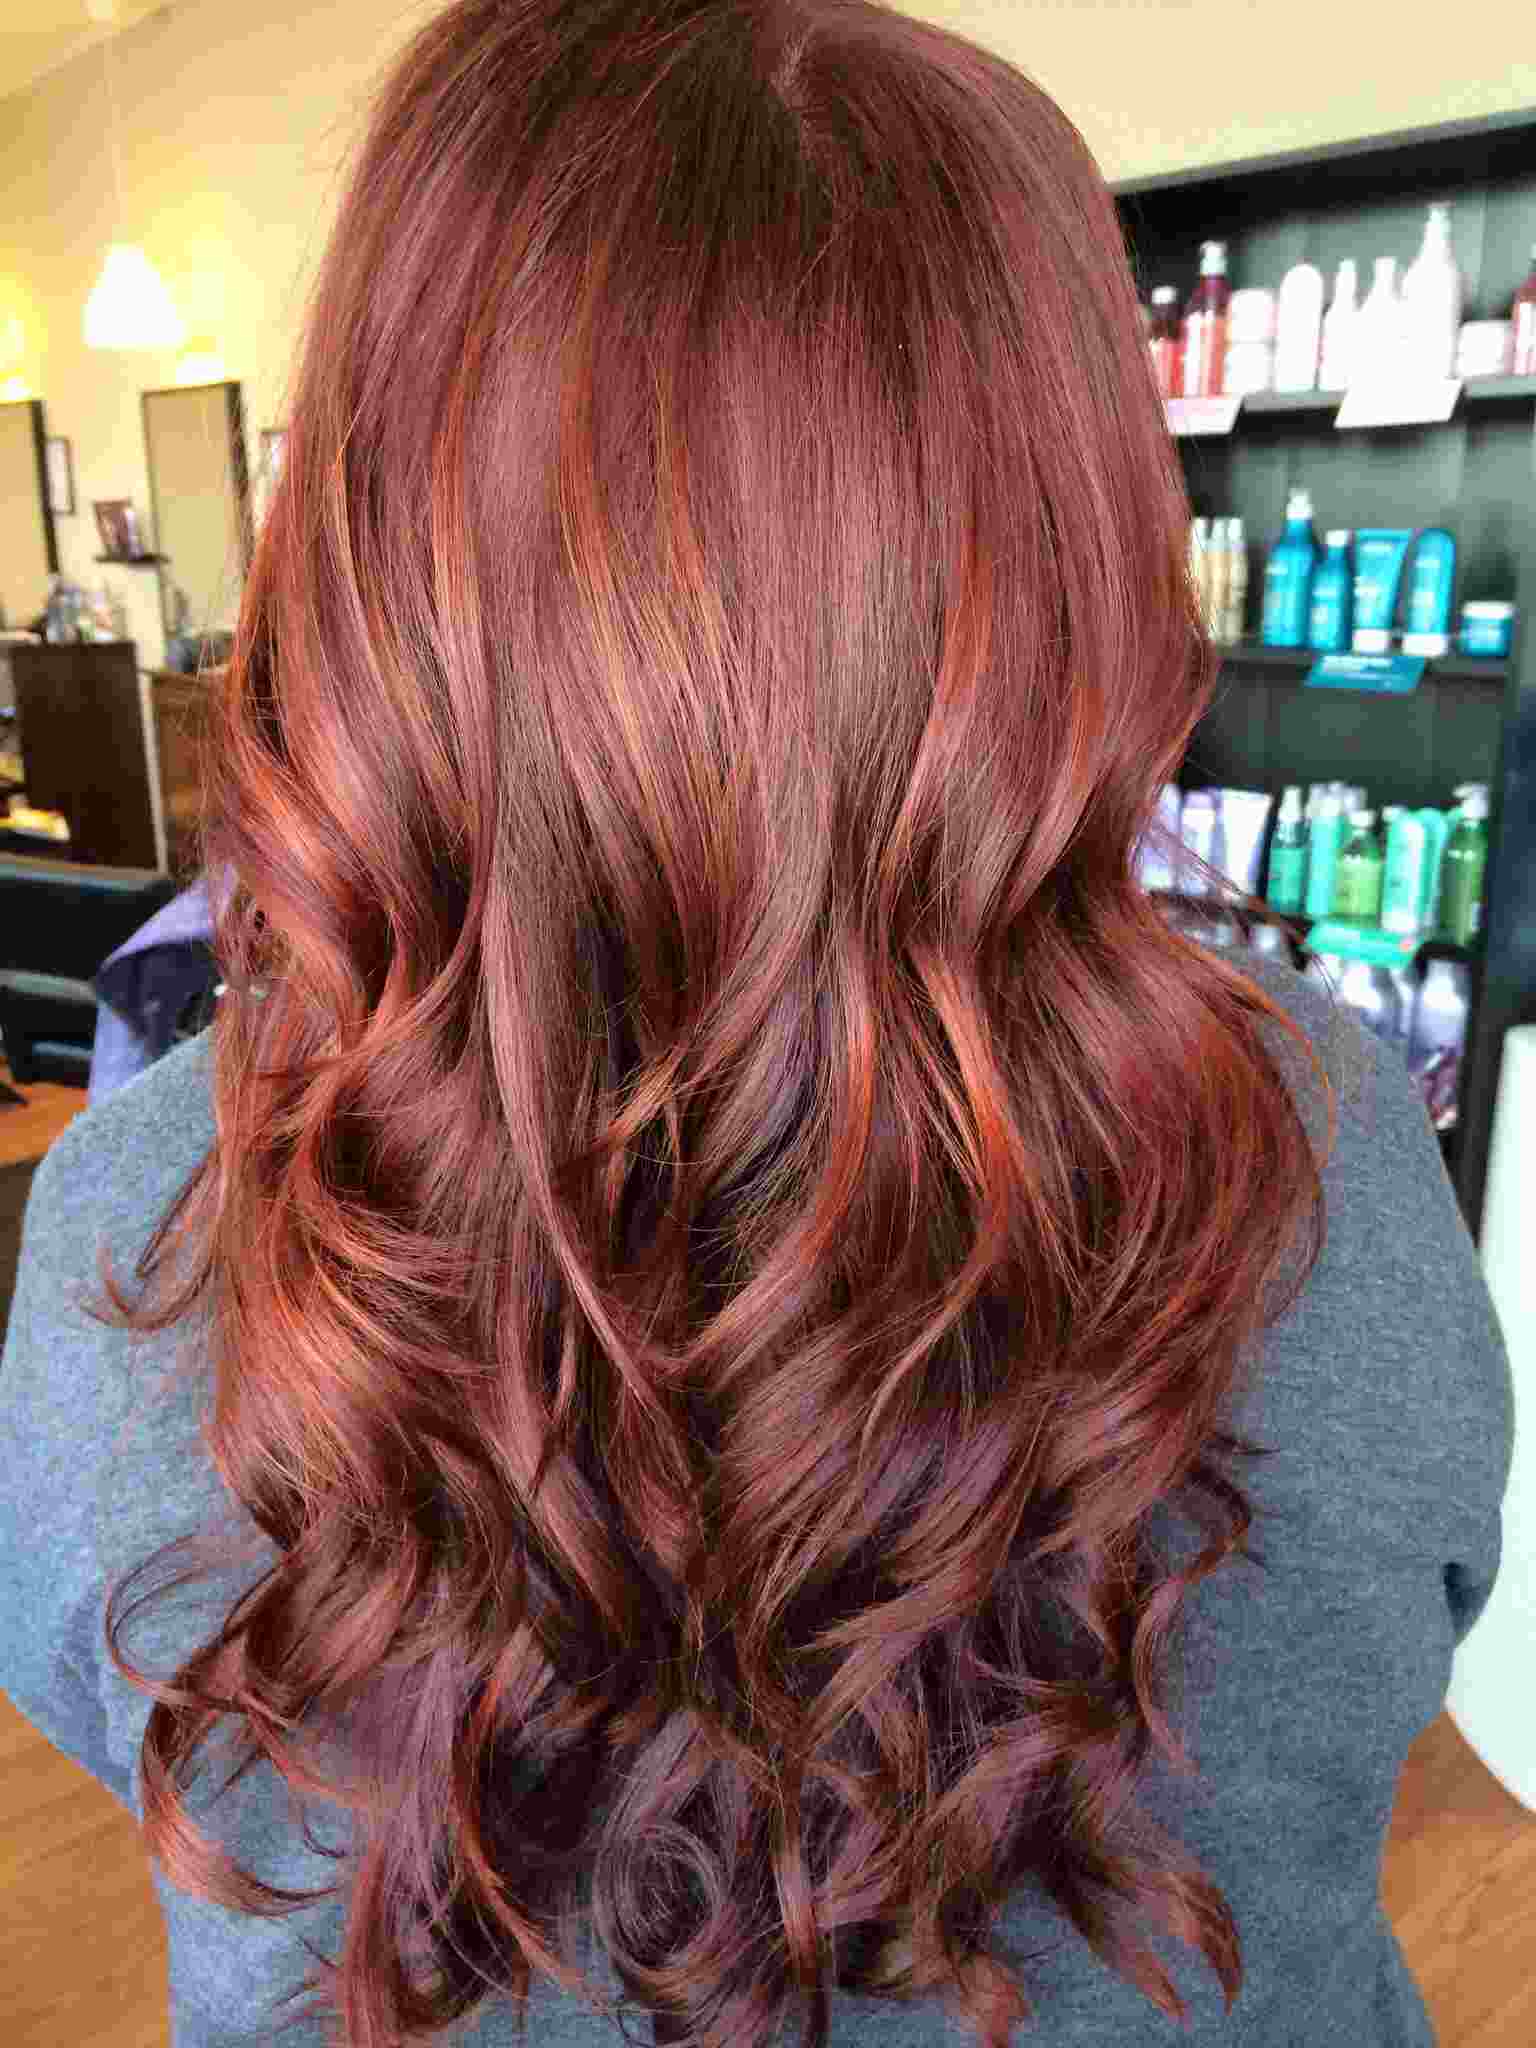 Tendências de cores de cabelos castanhos ruivos Balayage 2019 Ideias fáceis para penteados